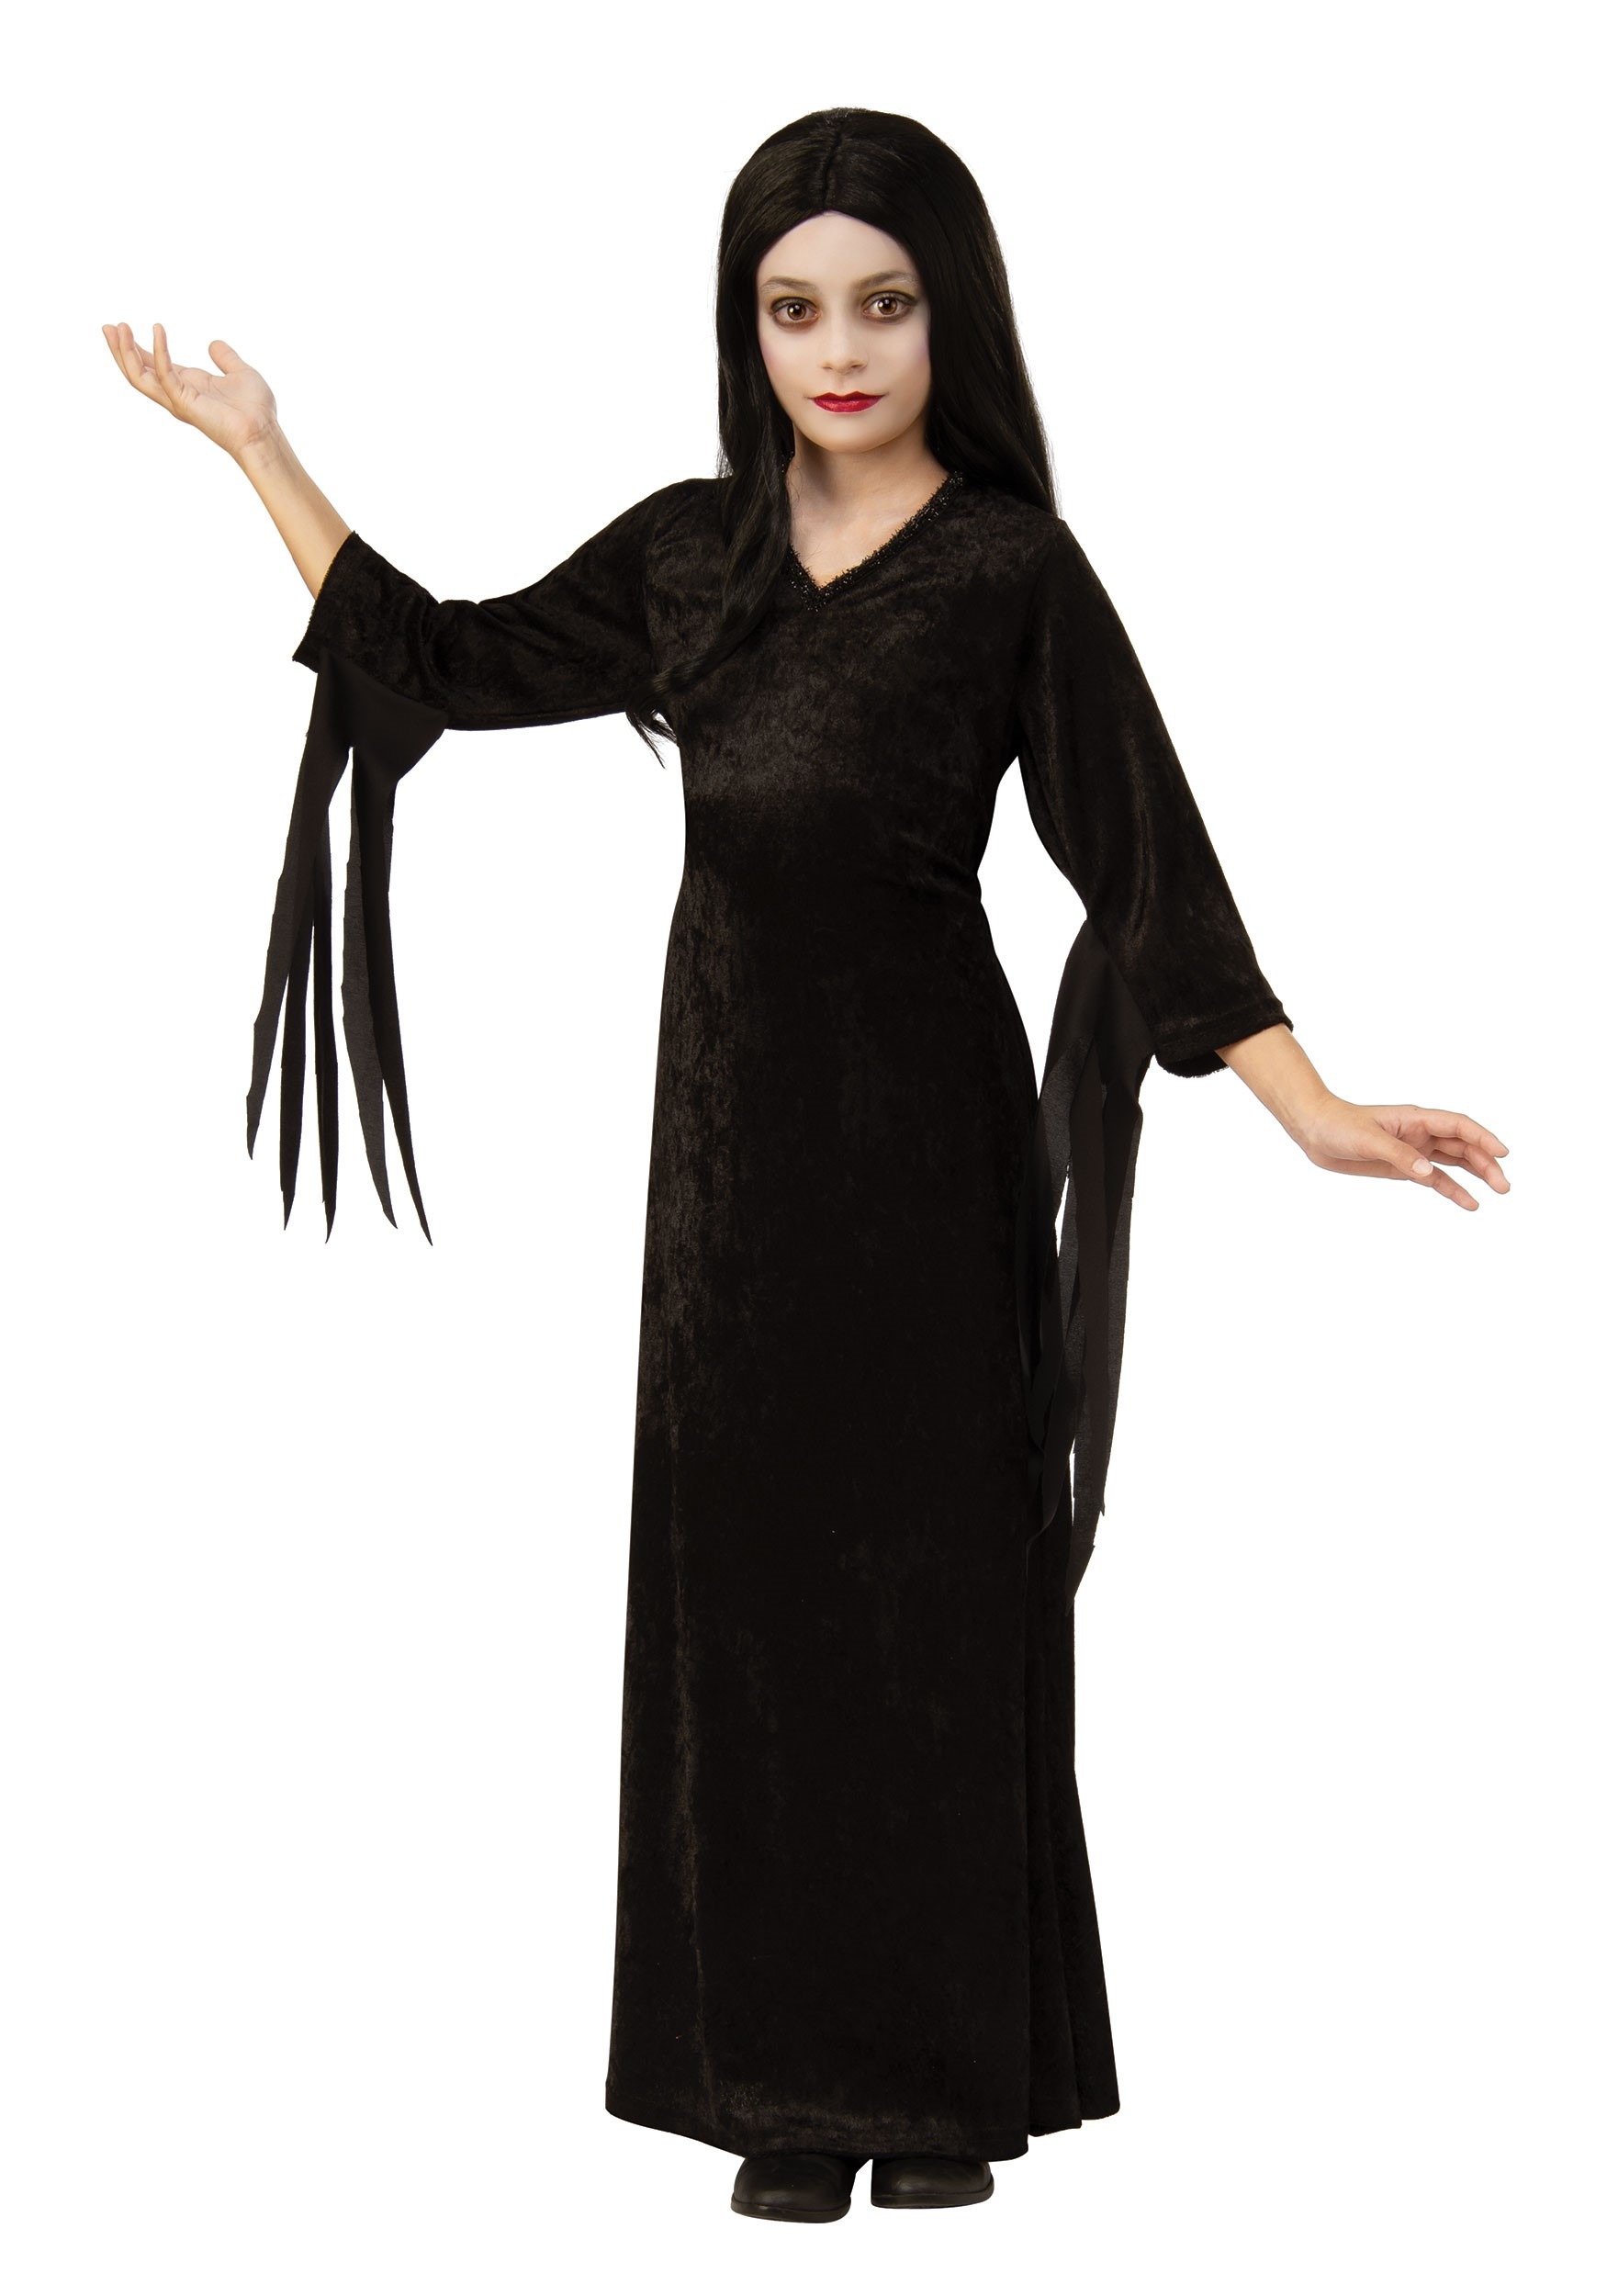 The Addams Family Kid's Morticia Costume